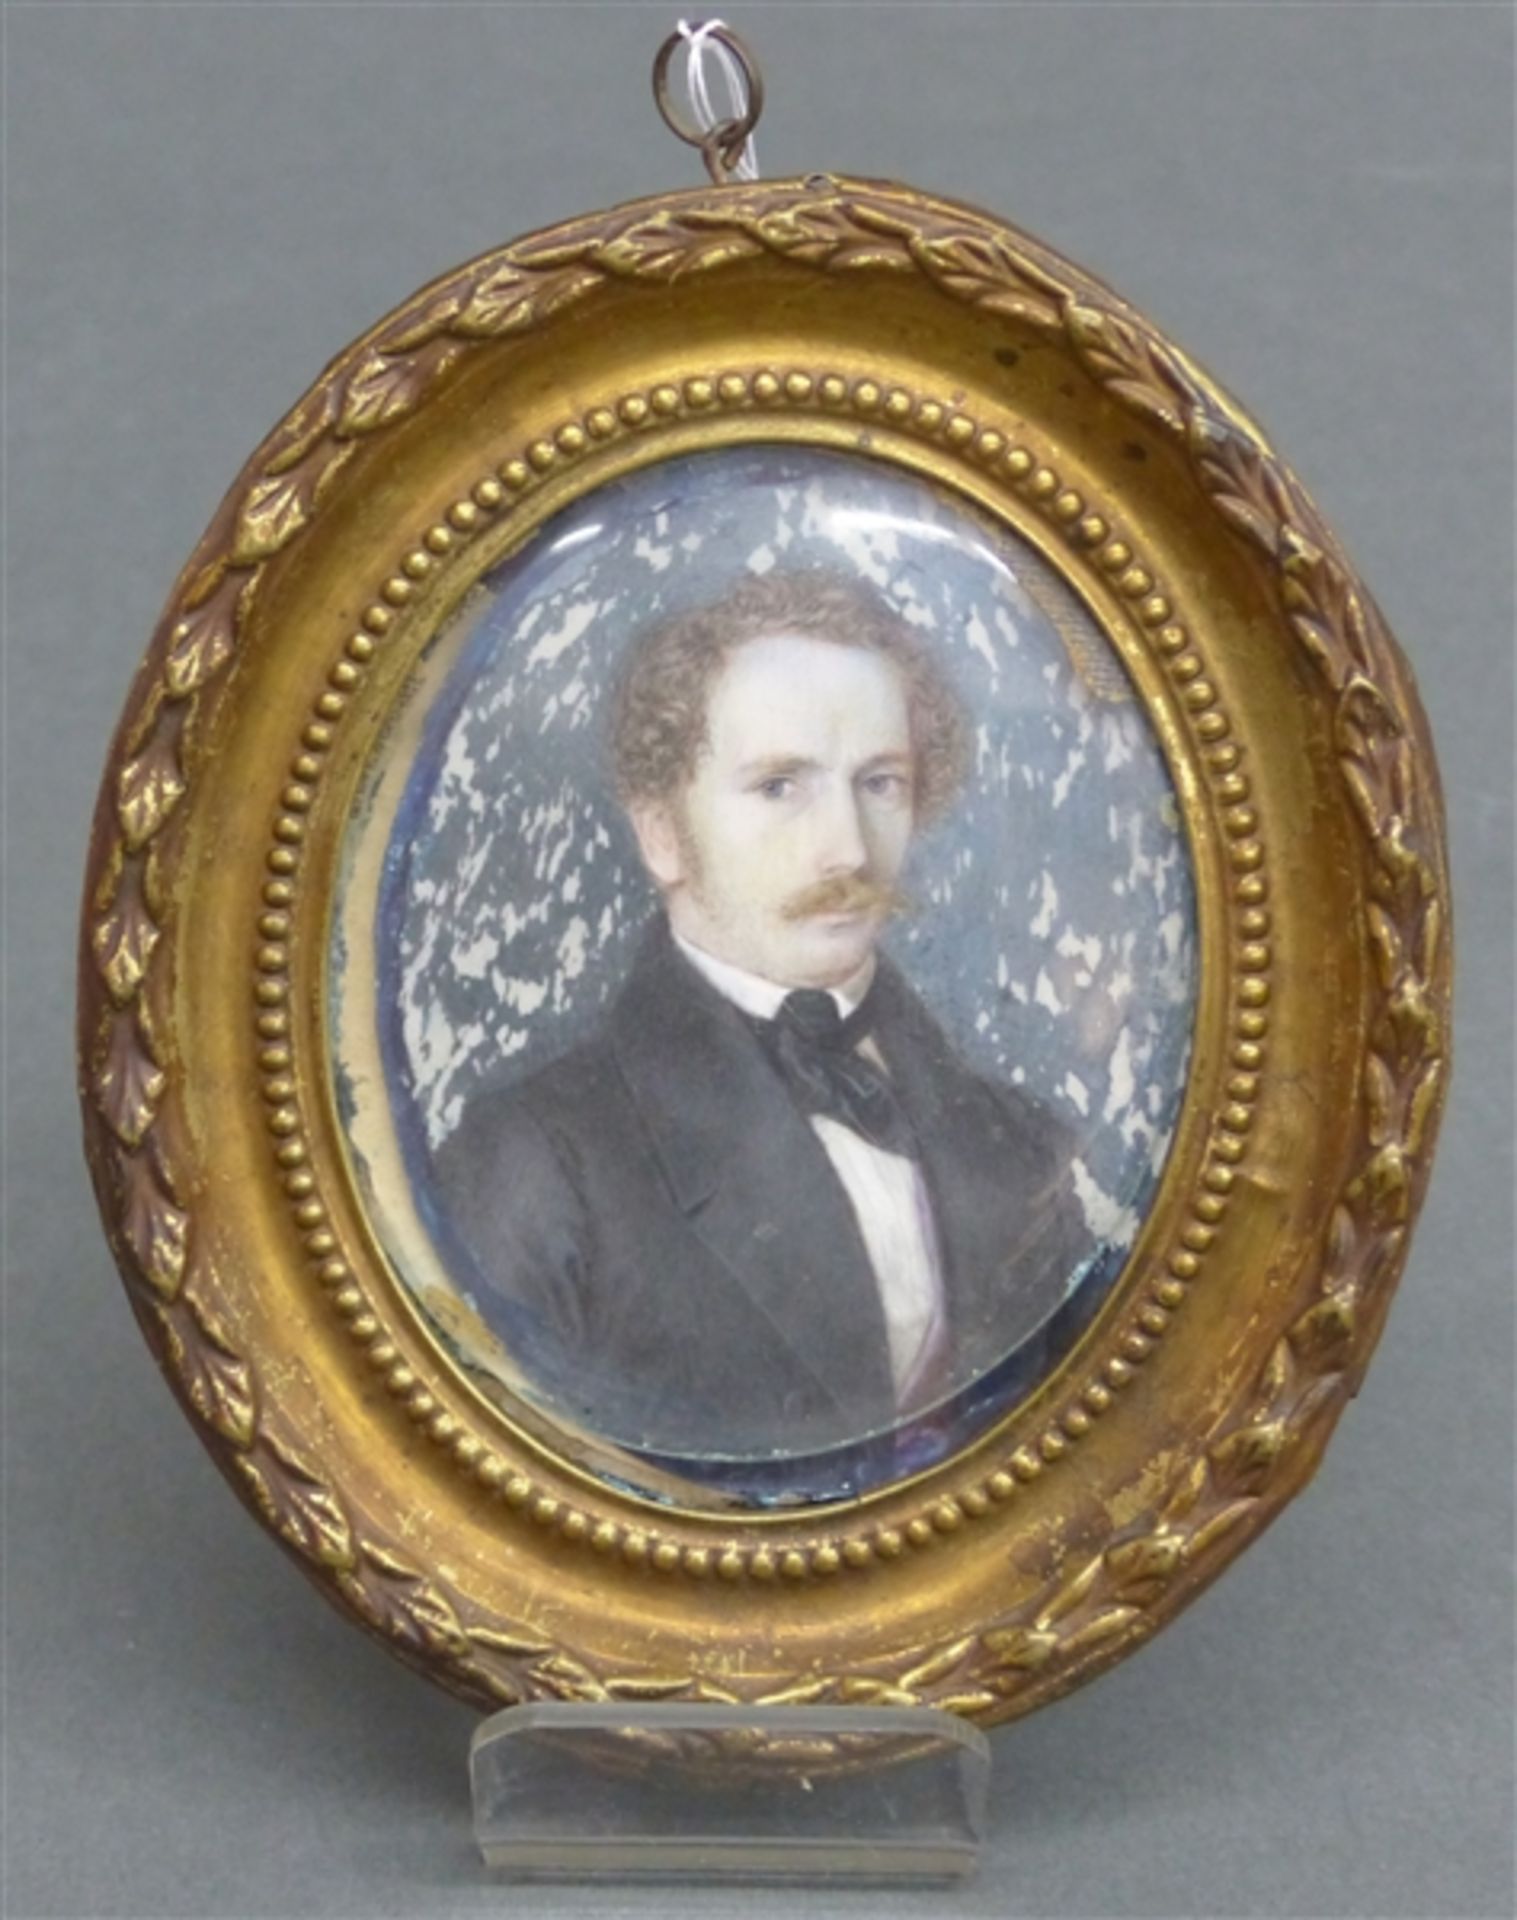 Miniatur um 1850 auf Elfenbein, Porträt eines vornehmen Herrn, oval, 8 x 6,5 cm, im Rahmen, Rahmen